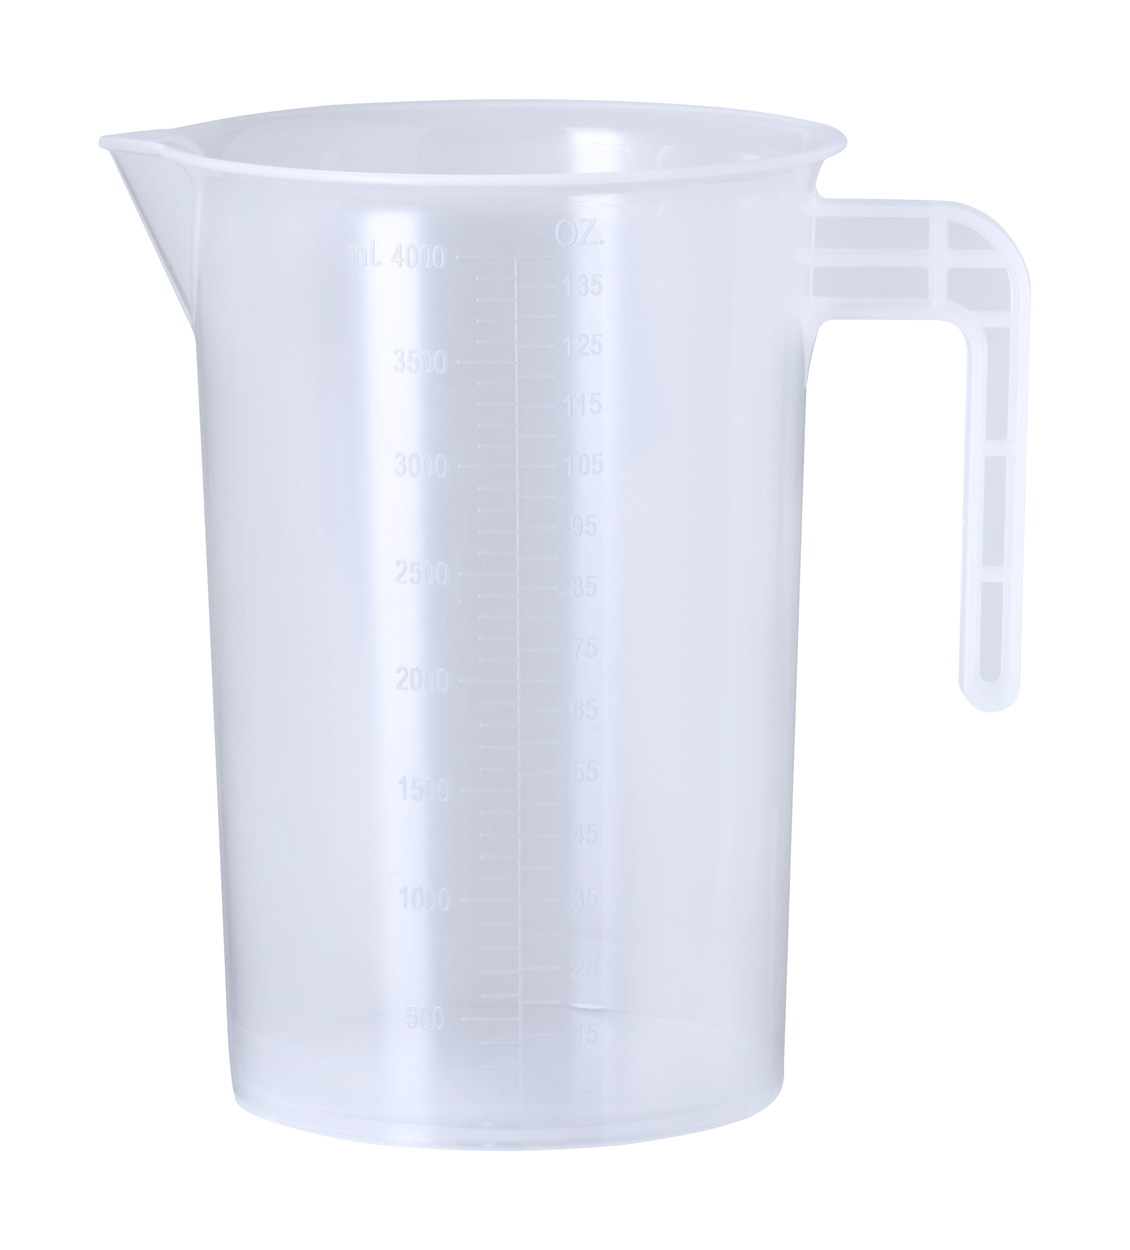 Promo  Danlox measuring jug